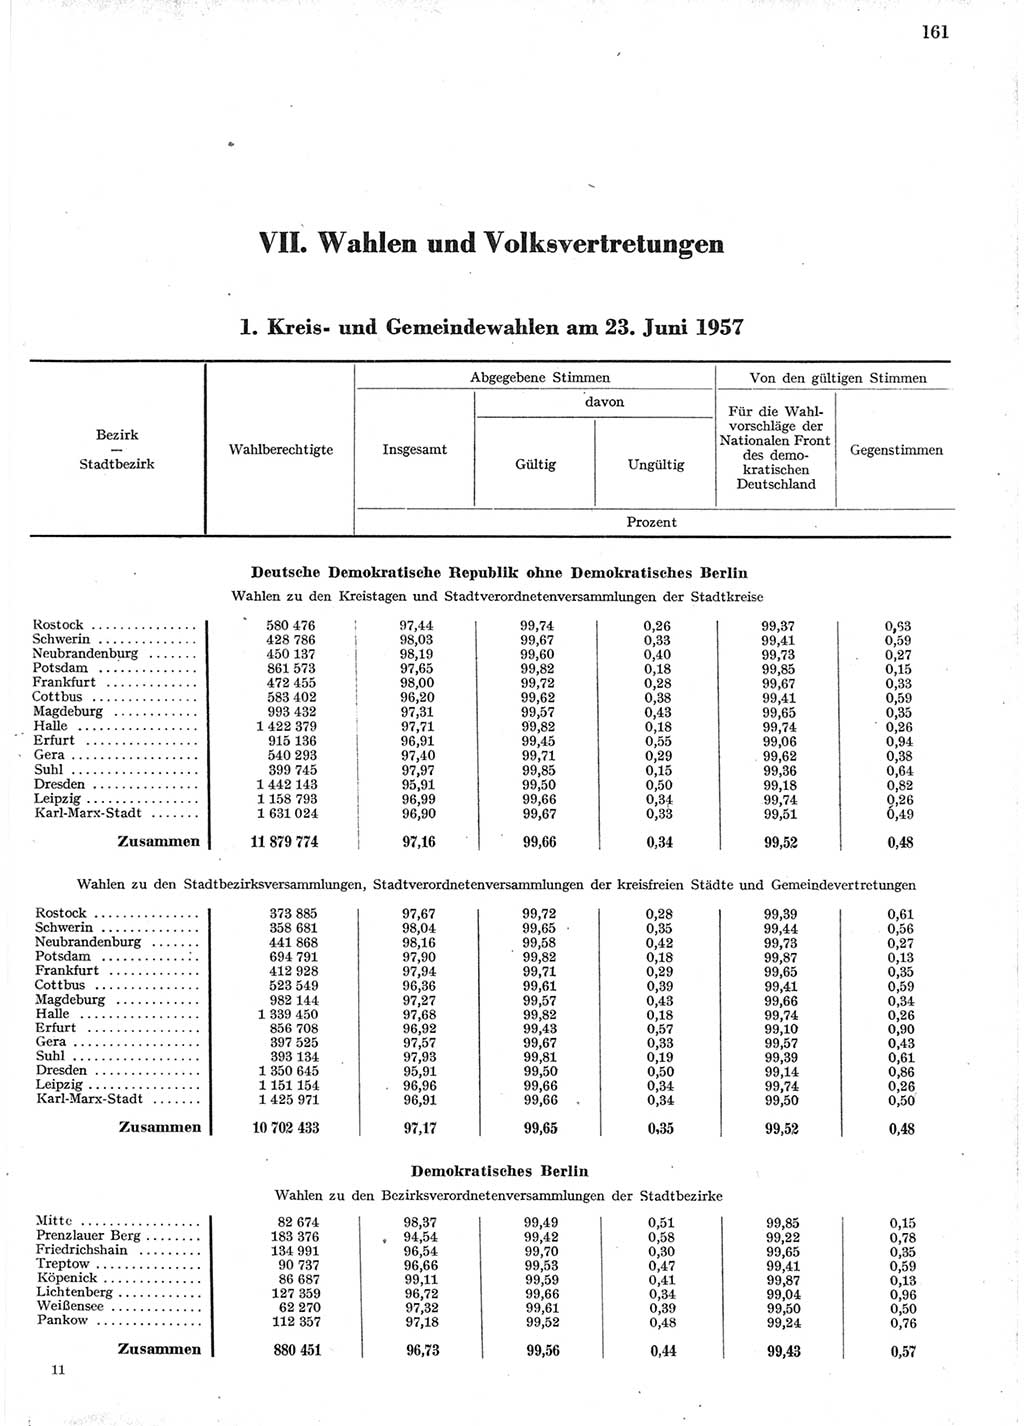 Statistisches Jahrbuch der Deutschen Demokratischen Republik (DDR) 1958, Seite 161 (Stat. Jb. DDR 1958, S. 161)